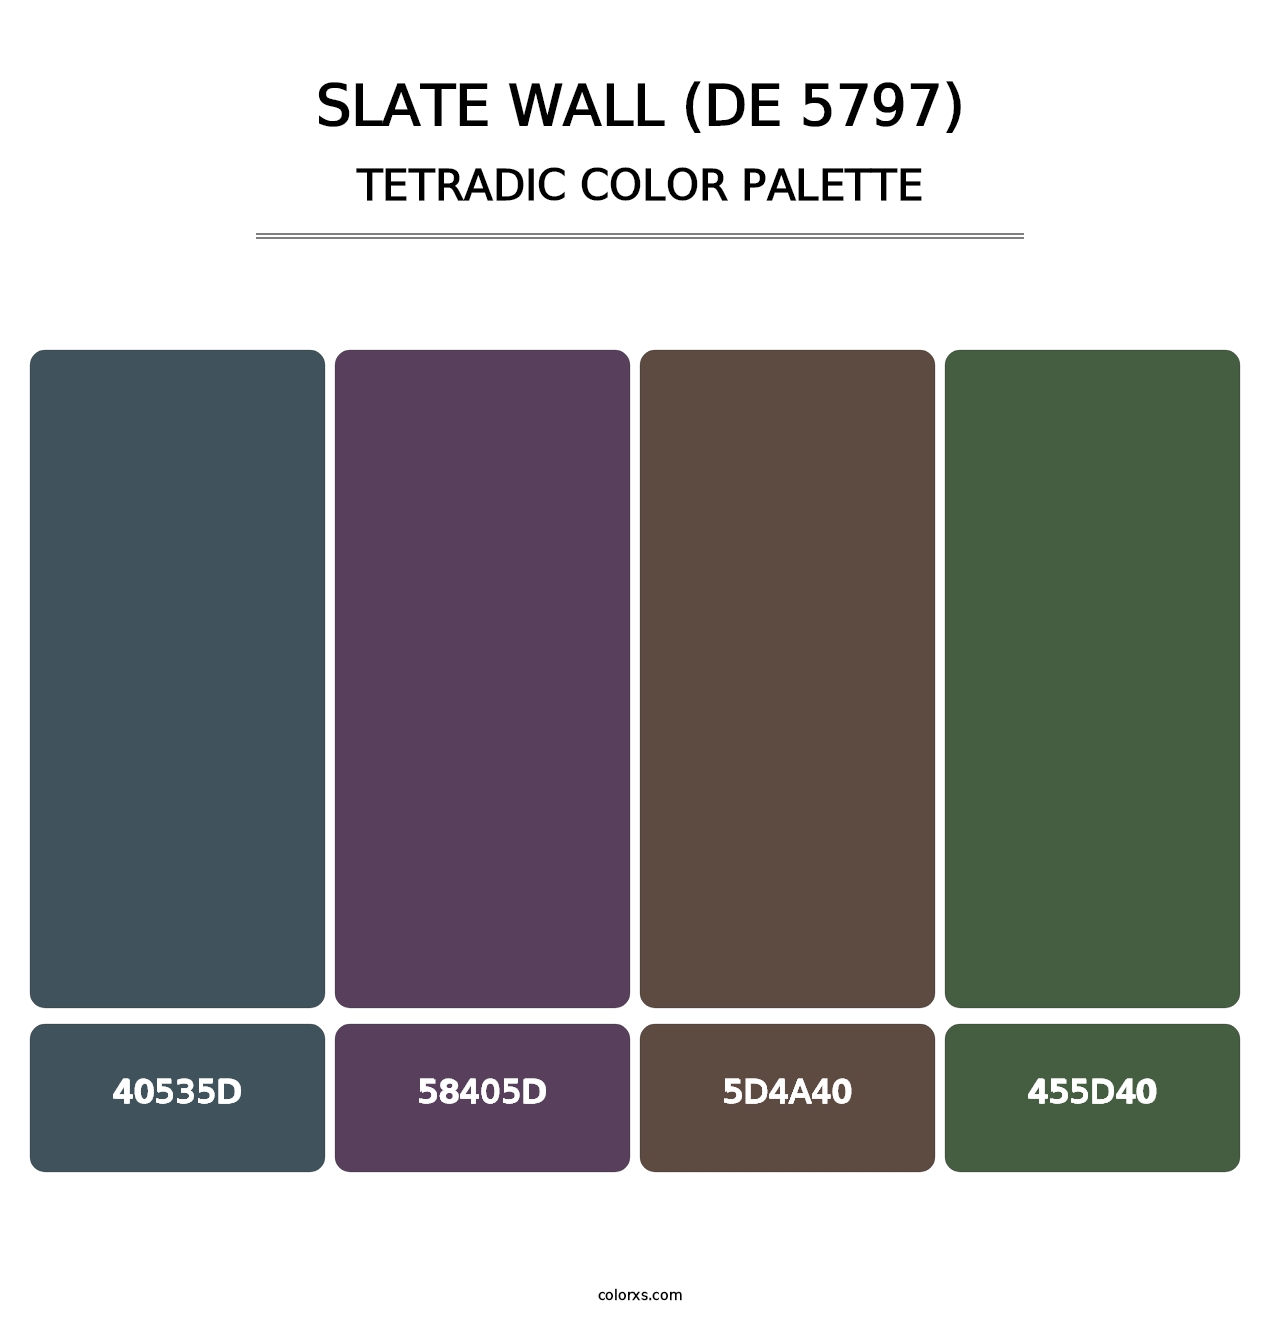 Slate Wall (DE 5797) - Tetradic Color Palette